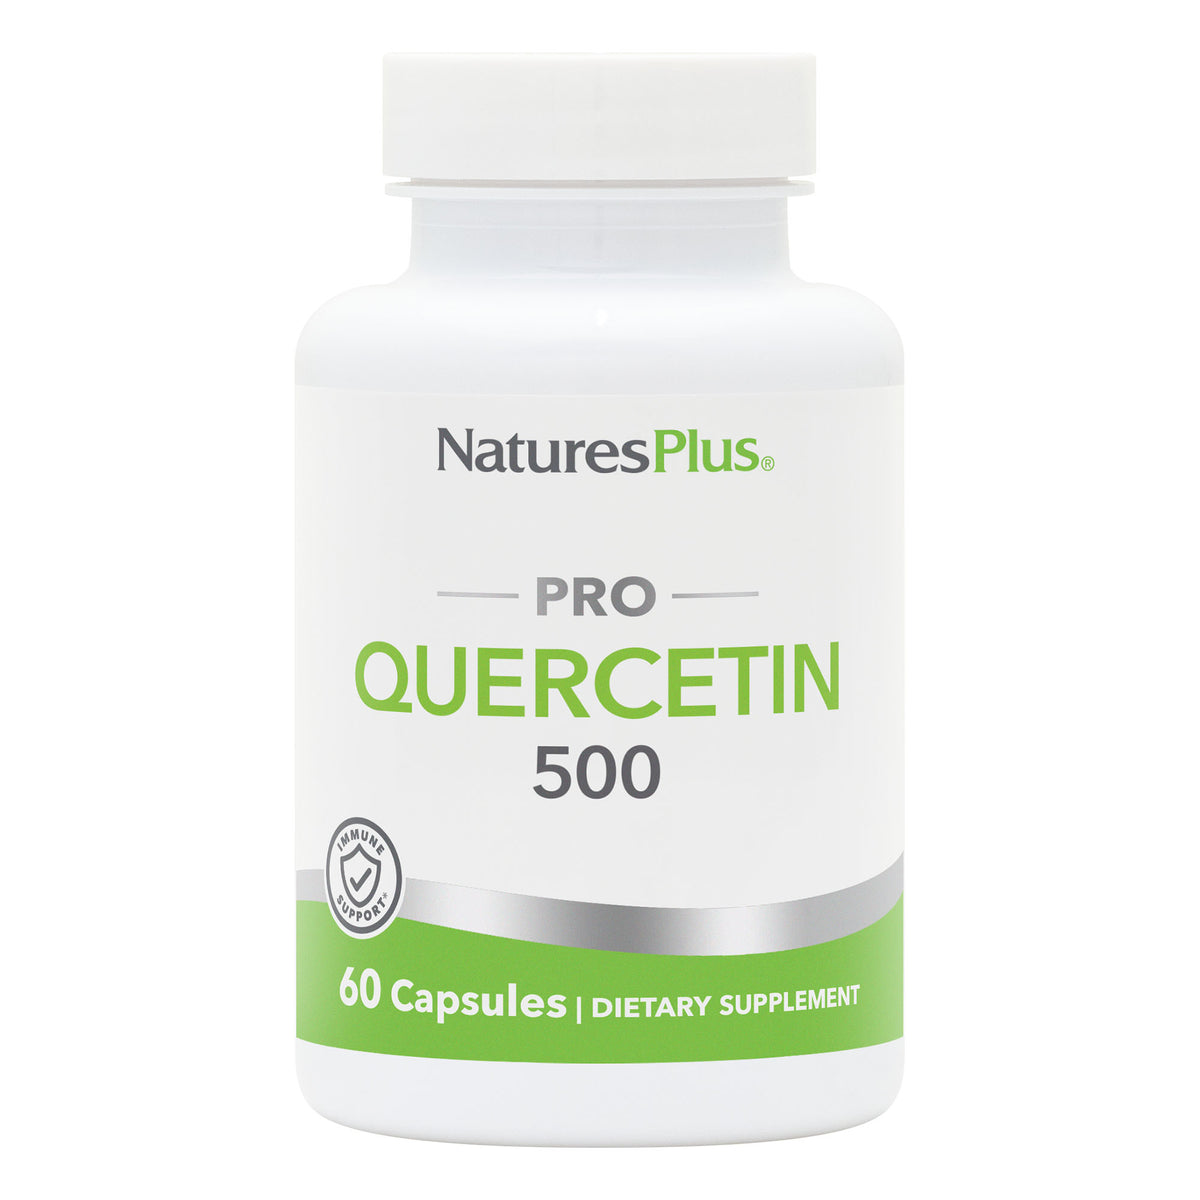 product image of NaturesPlus PRO Quercetin 500 Capsules containing 60 Count